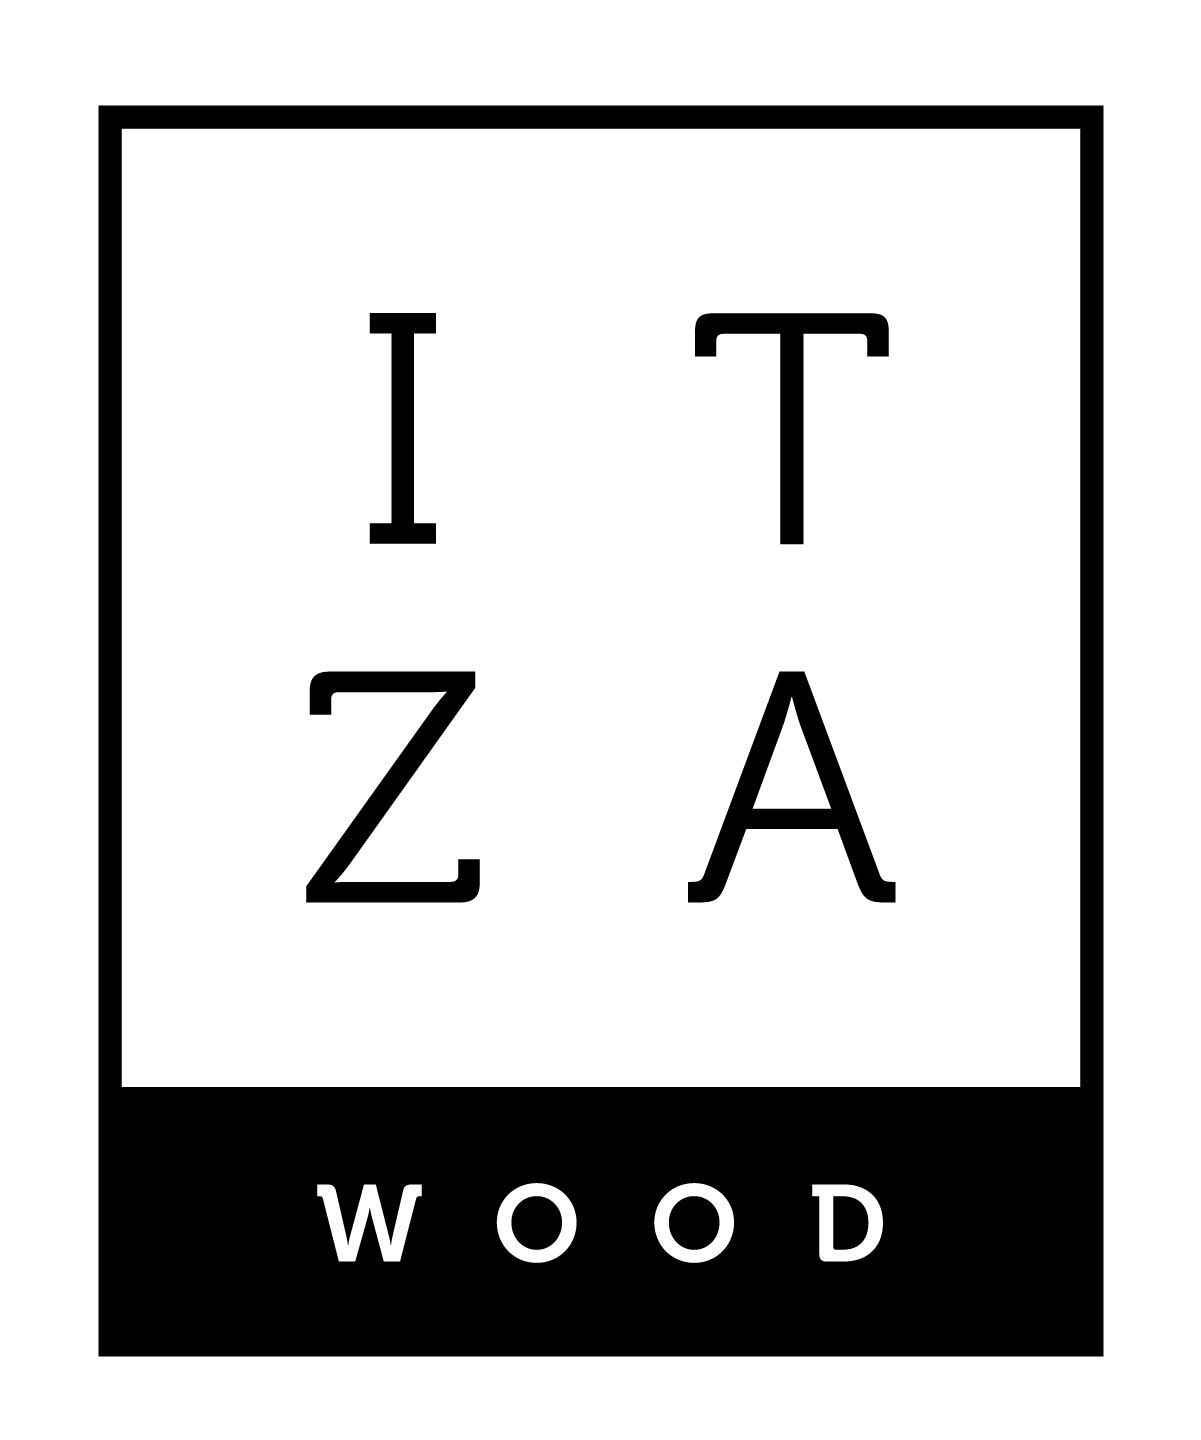 Itza Wood, S.A.